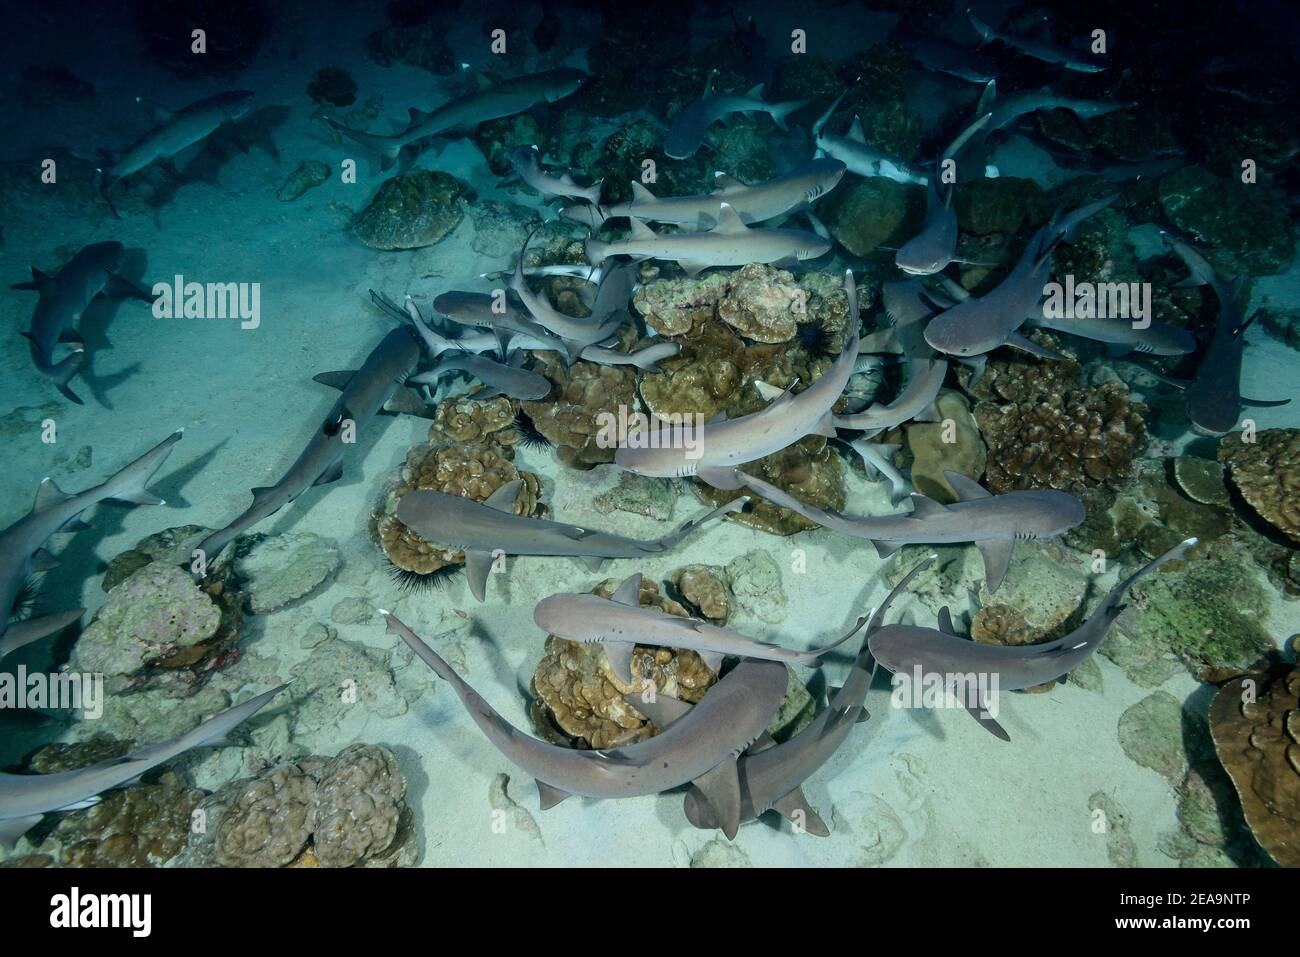 Tiburón de arrecife de punta blanca (Triaenodon obesus) que duerme en el fondo del mar, Isla de Cocos, Costa Rica, Pacífico, Océano Pacífico Foto de stock